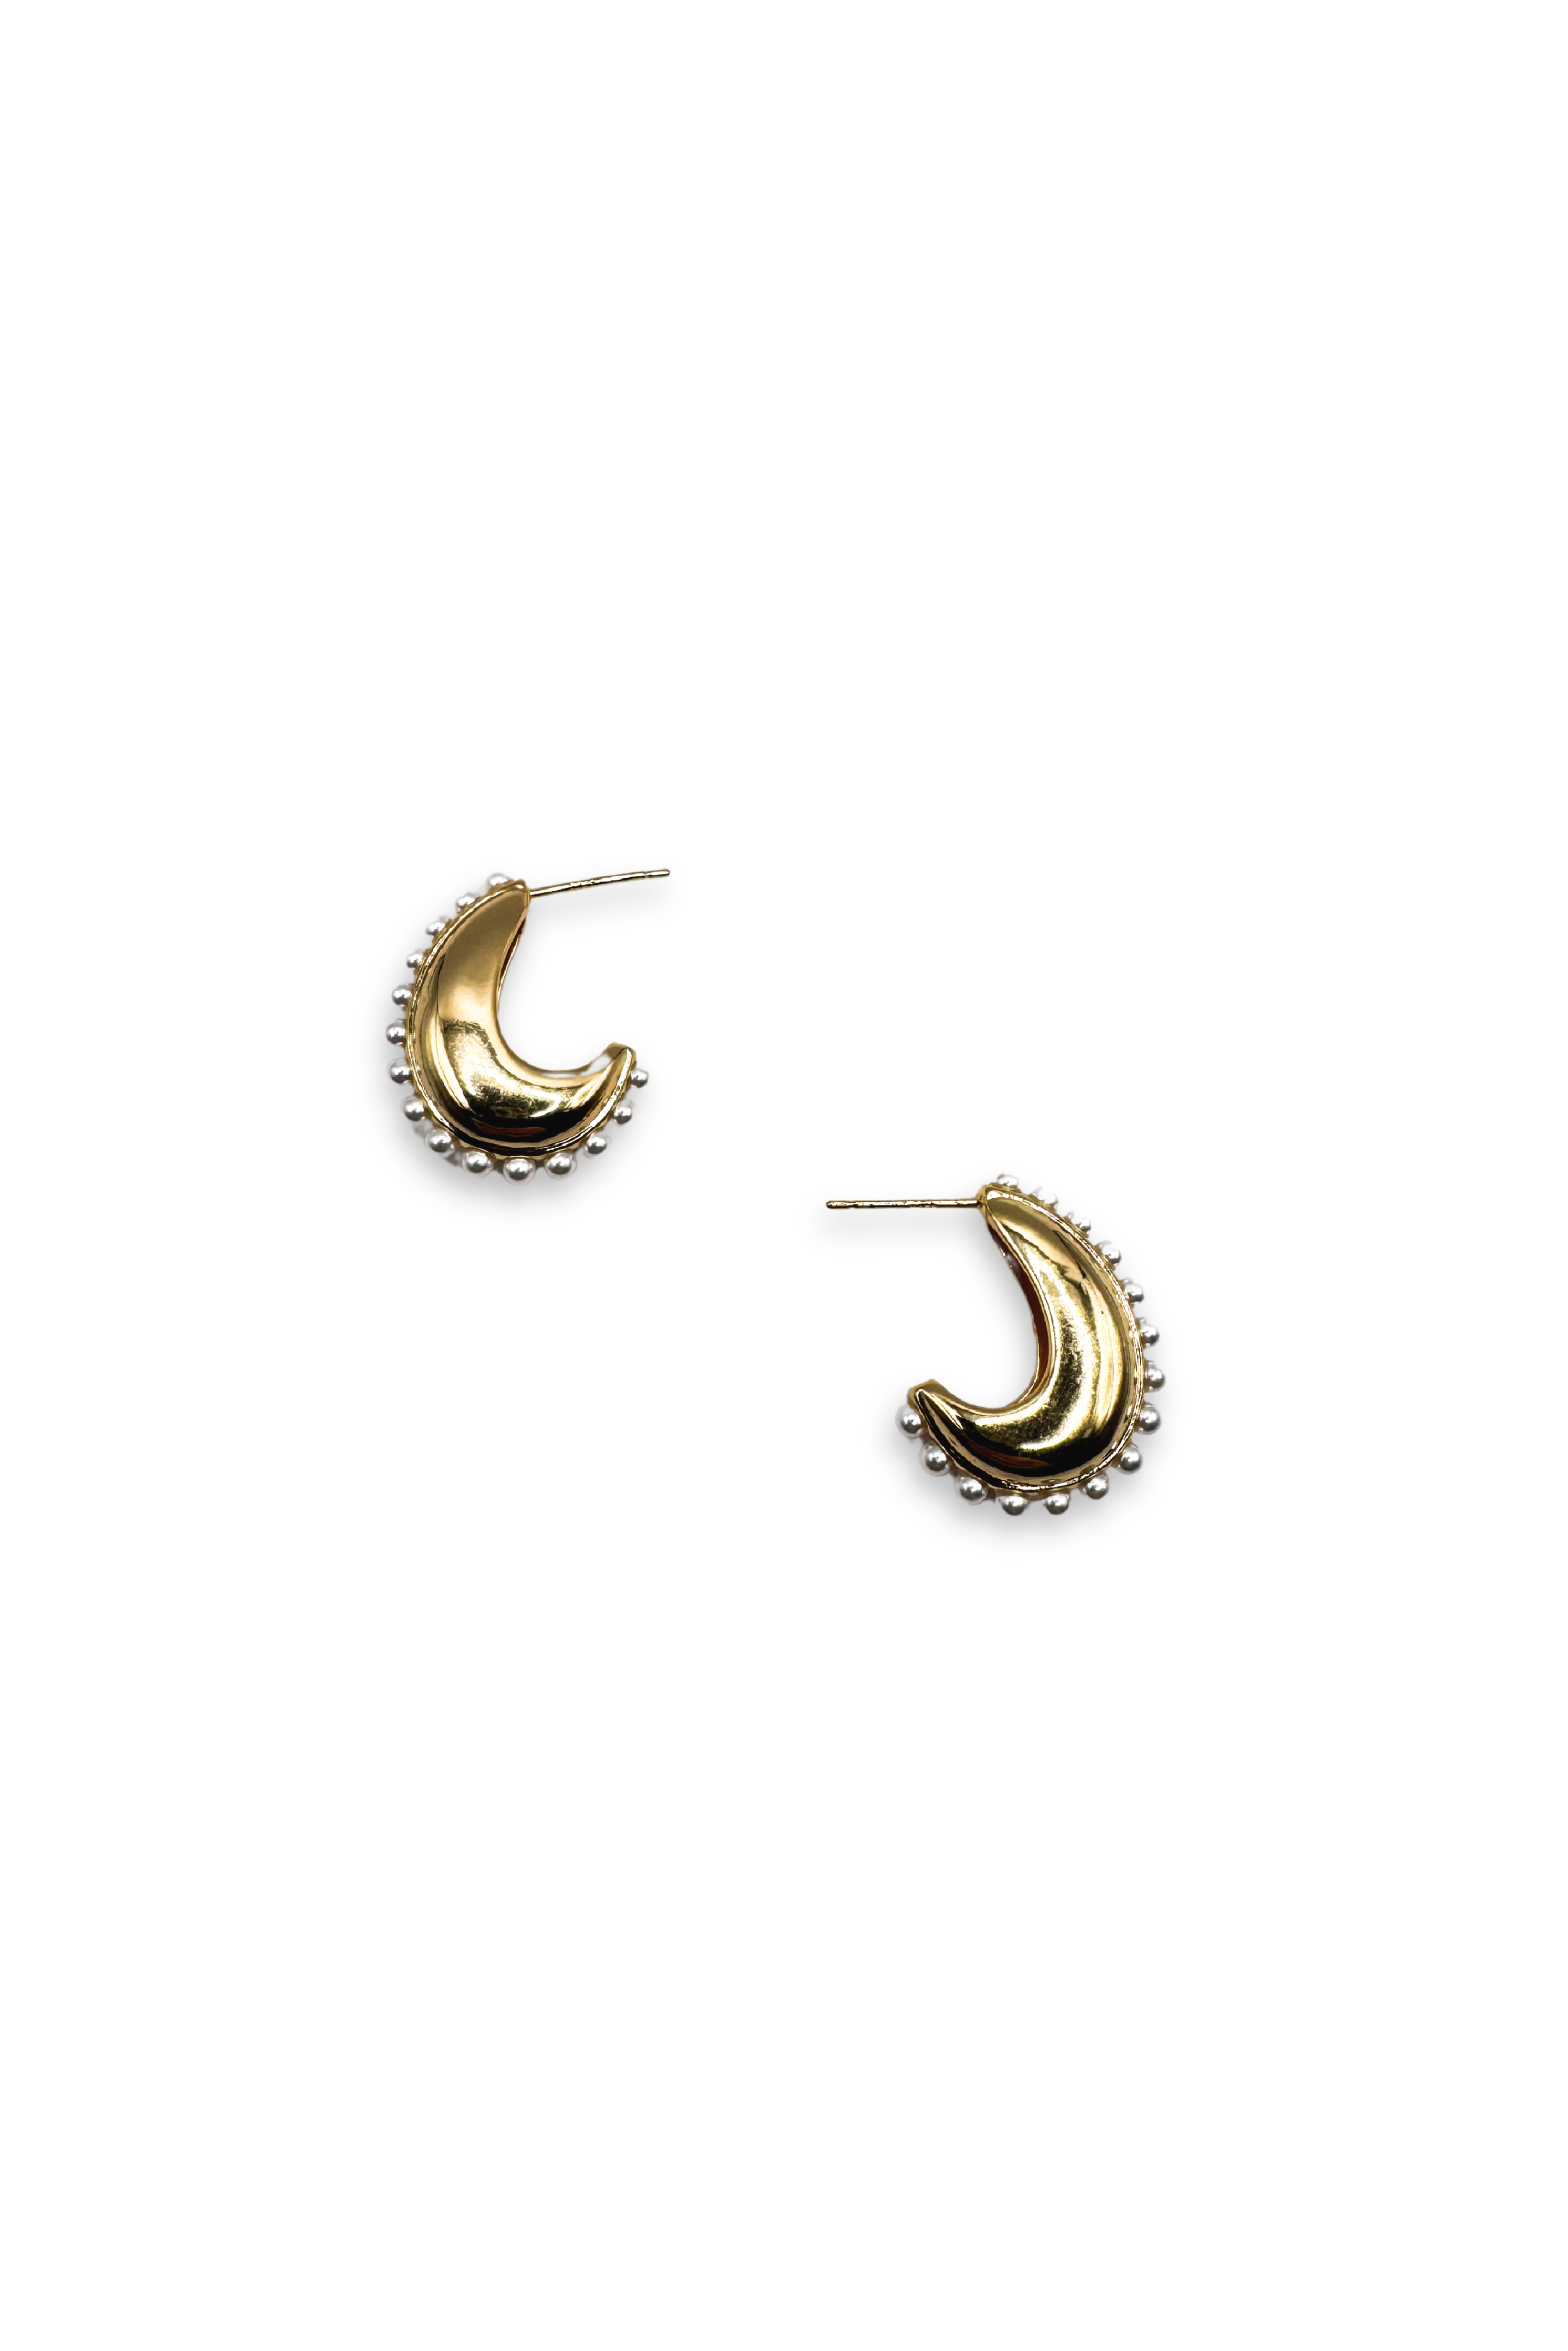 Rowan Gold Plated Earrings